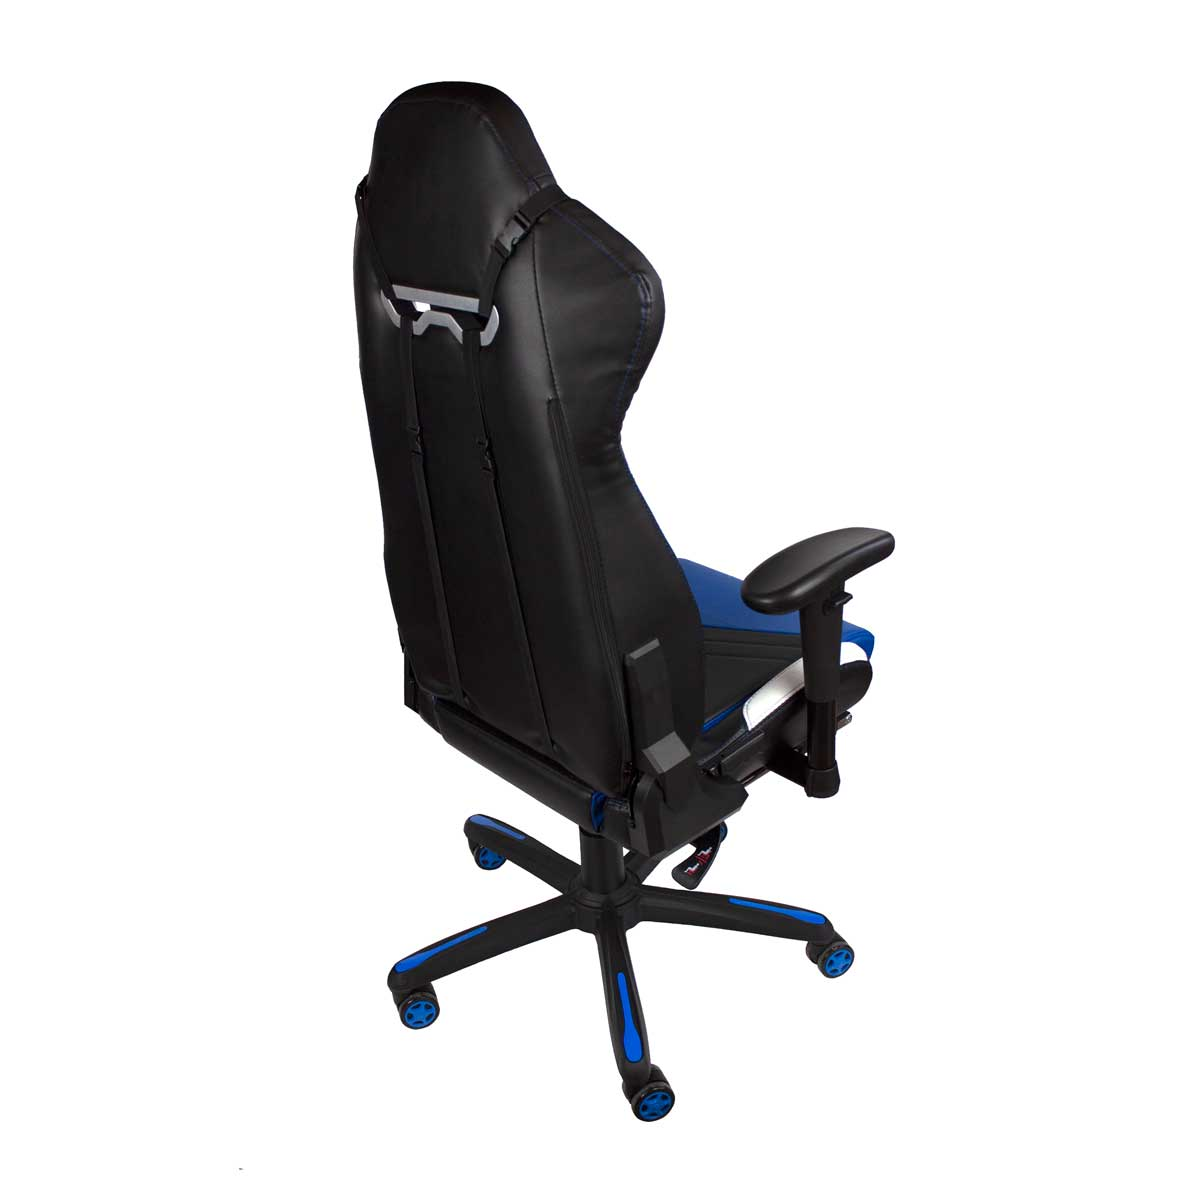 PRIXTON Onyx Blau Chair, Gaming